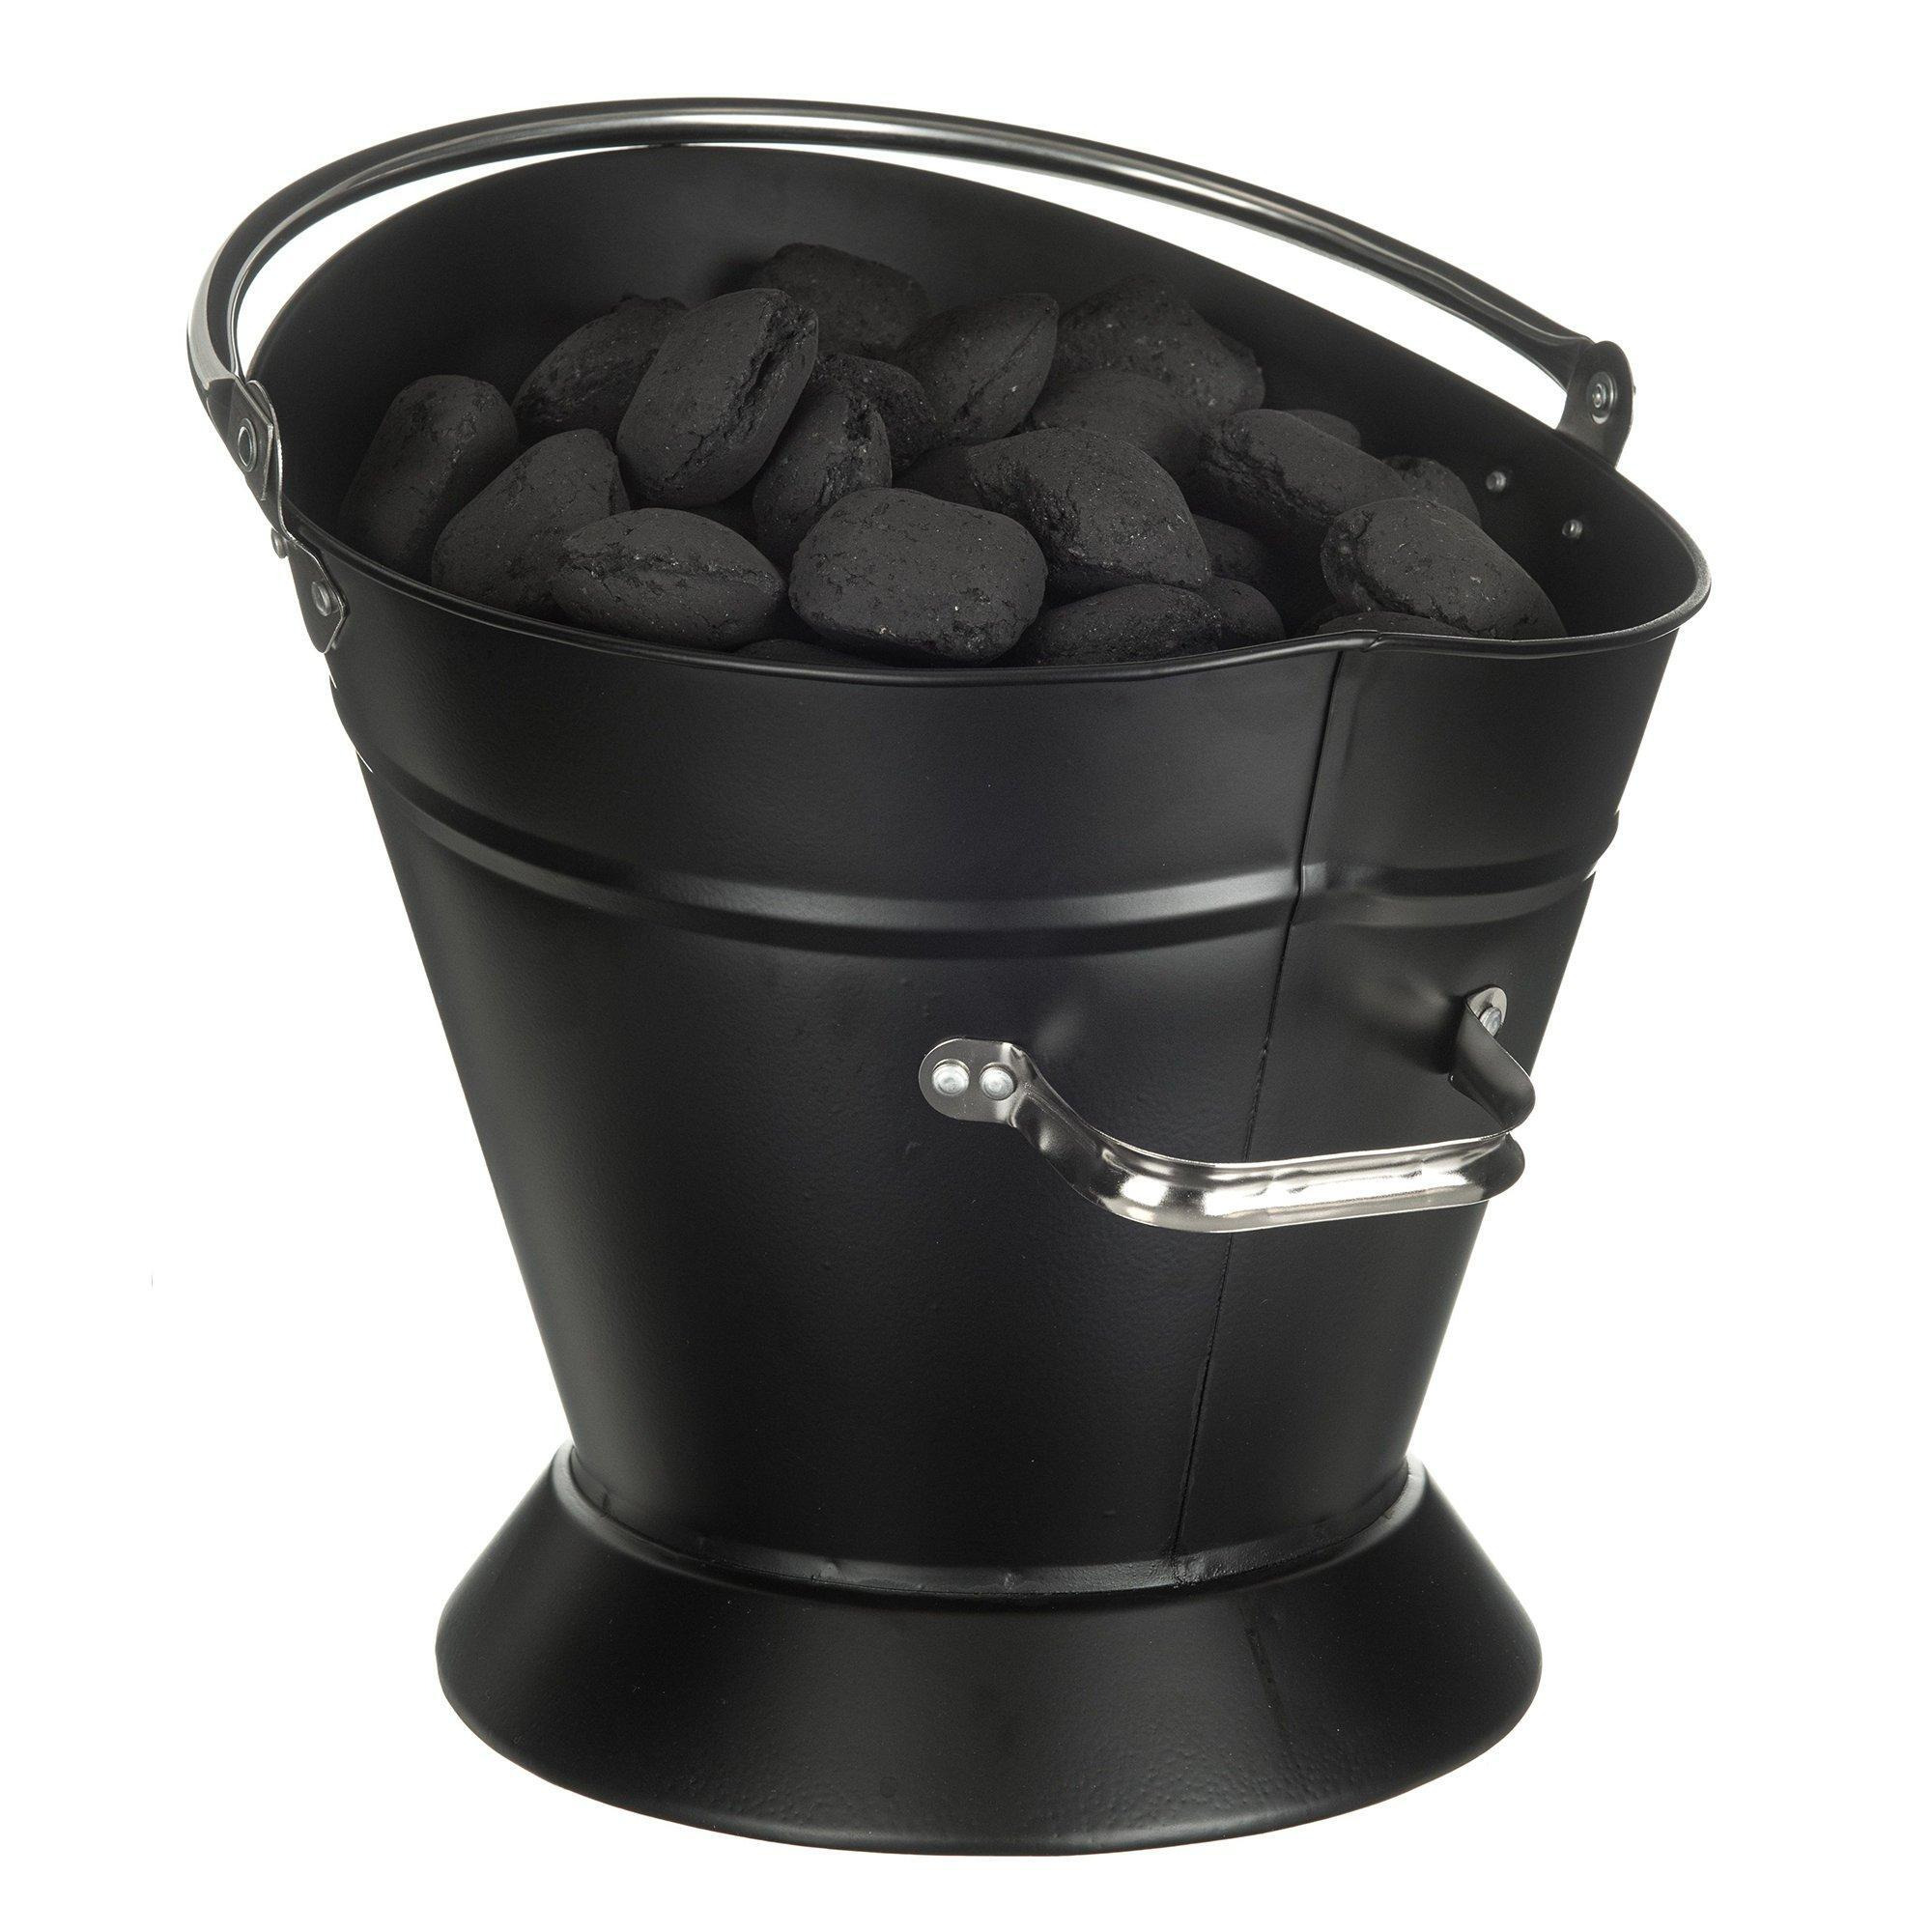 Waterloo Coal Bucket with Nickel-Coated Handle - image 1